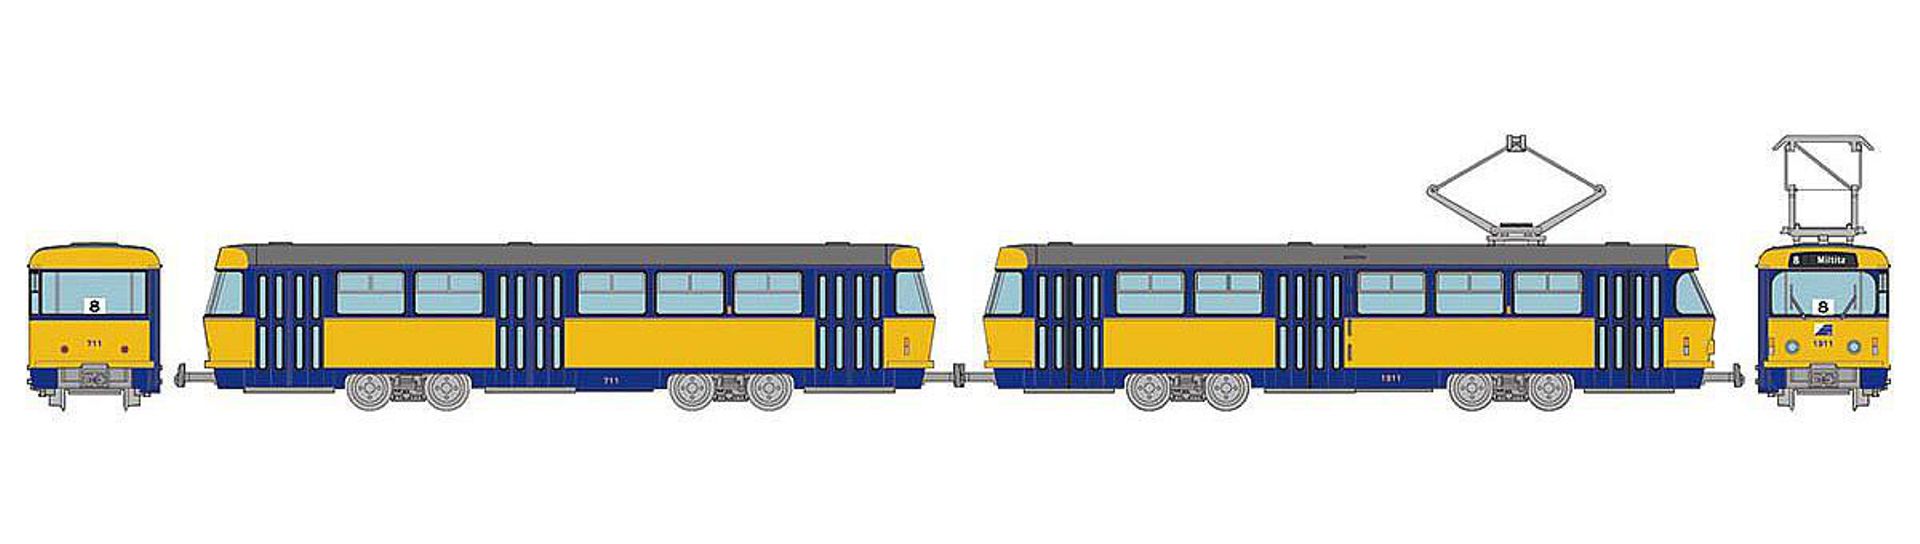 TOMYTEC 977821-AE - Leipziger Straßenbahn Tatra T4-B4, grau-blau-gelb, Ep.IV